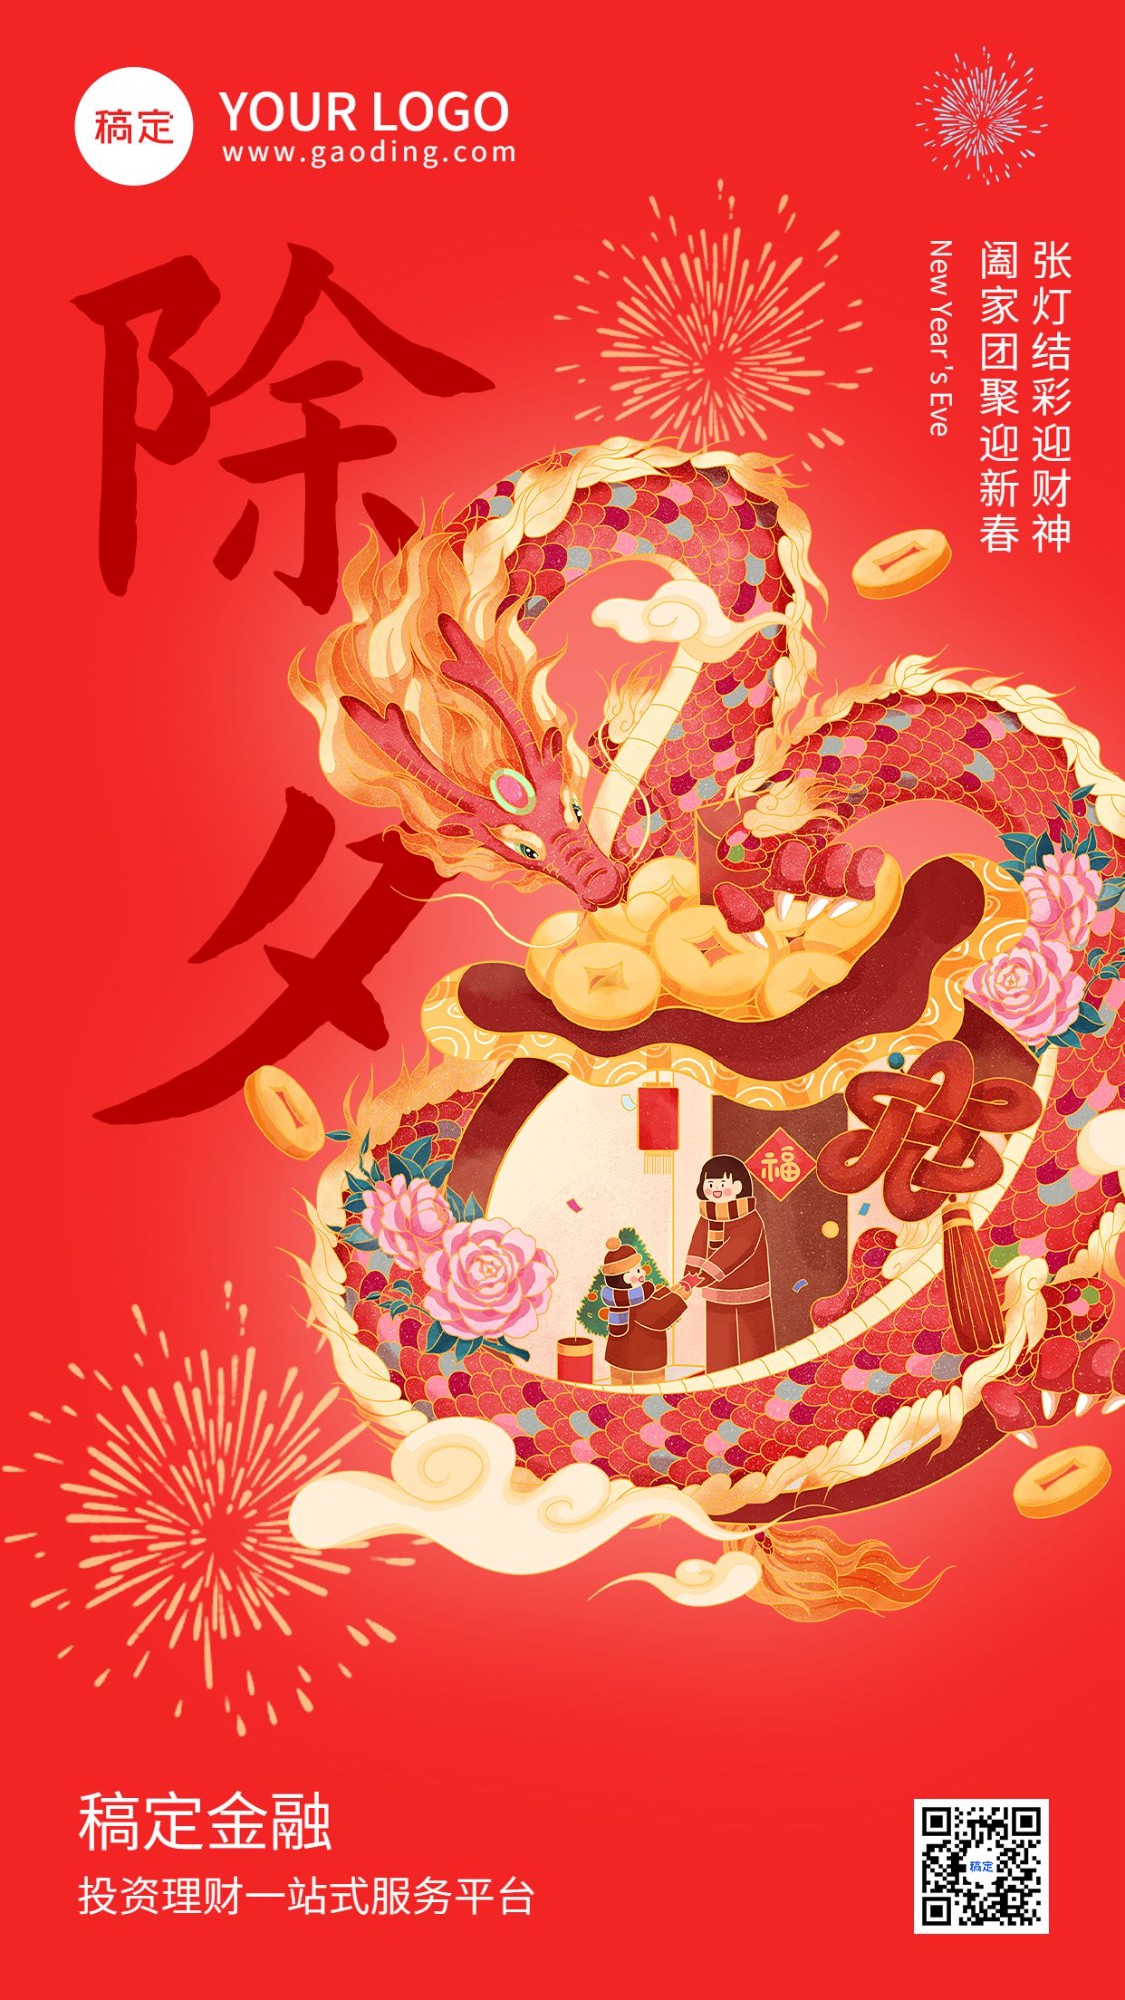 除夕金融保险春节节日祝福创意手绘手机海报